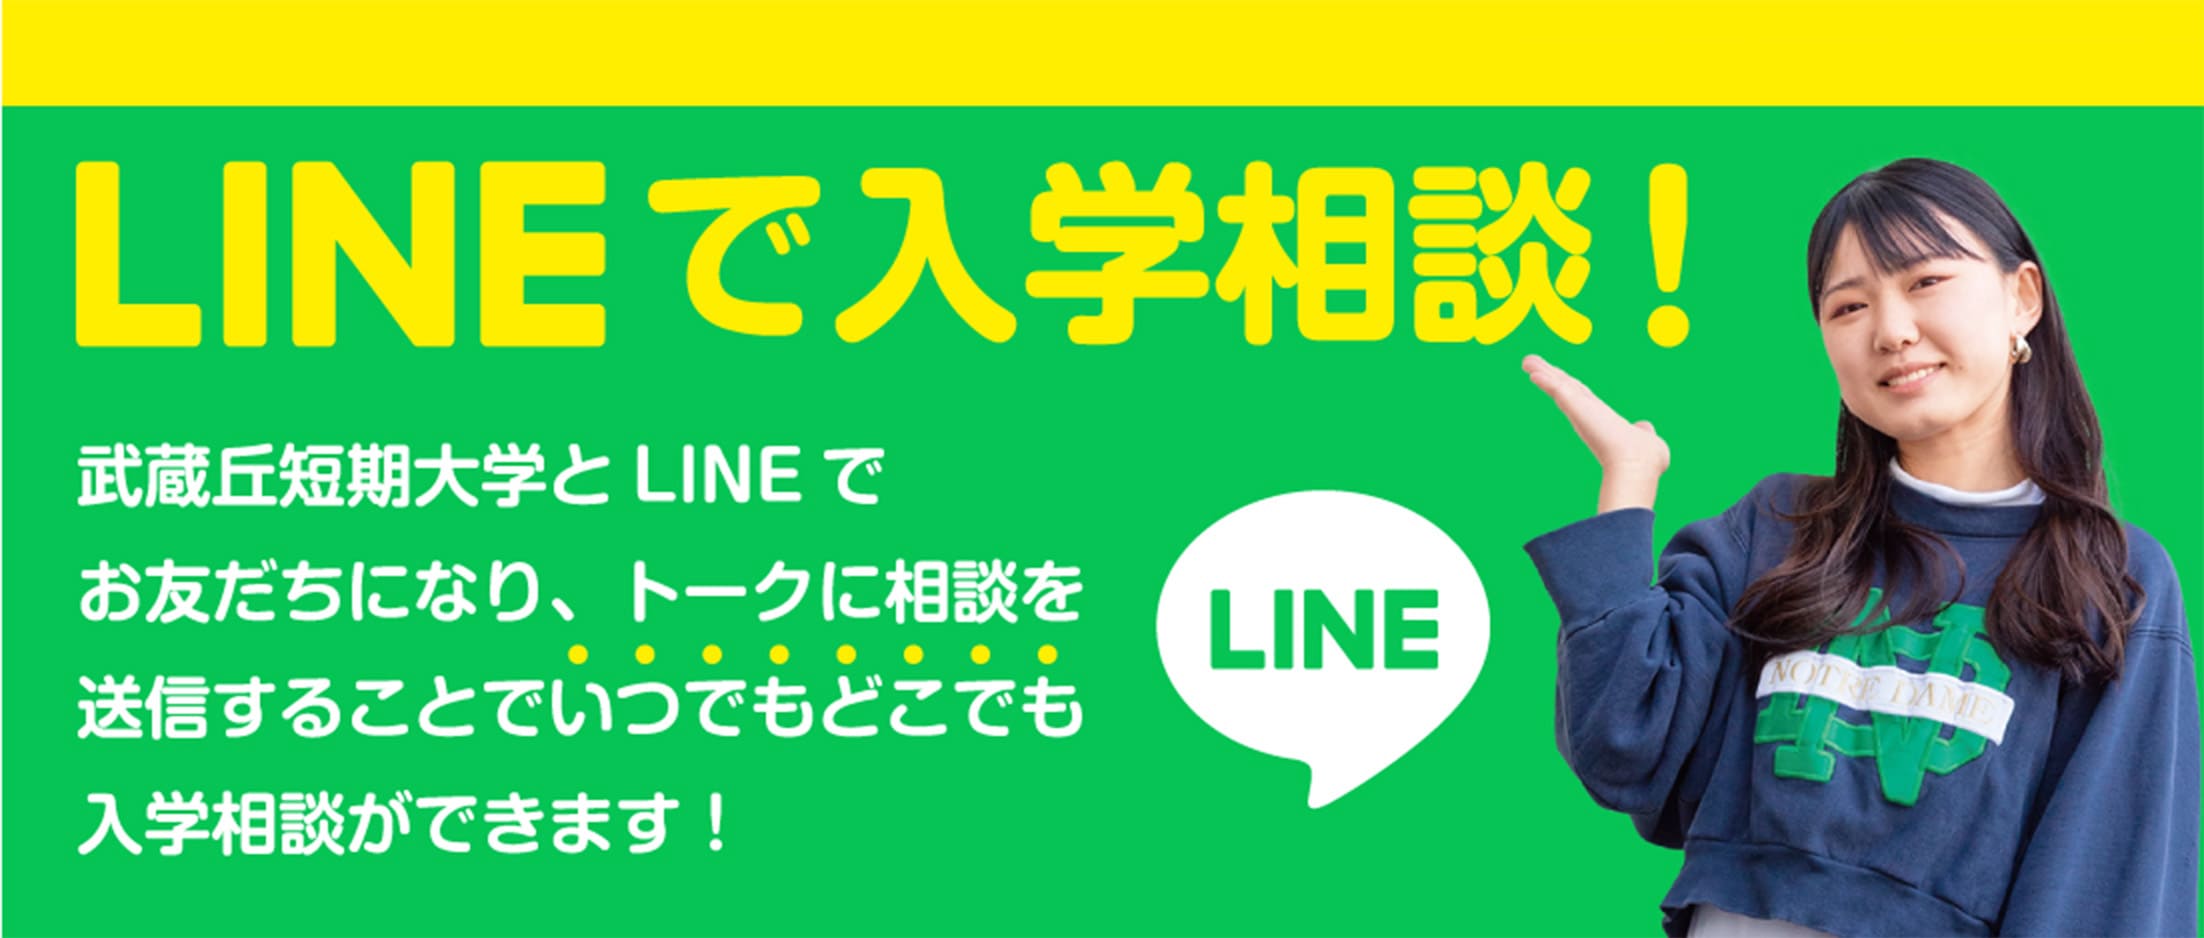 LINEで入学相談！ 武蔵丘短期大学とLINEでお友だちになり、トークに相談を送信することでいつでもどこでも入学相談ができます！ LINE